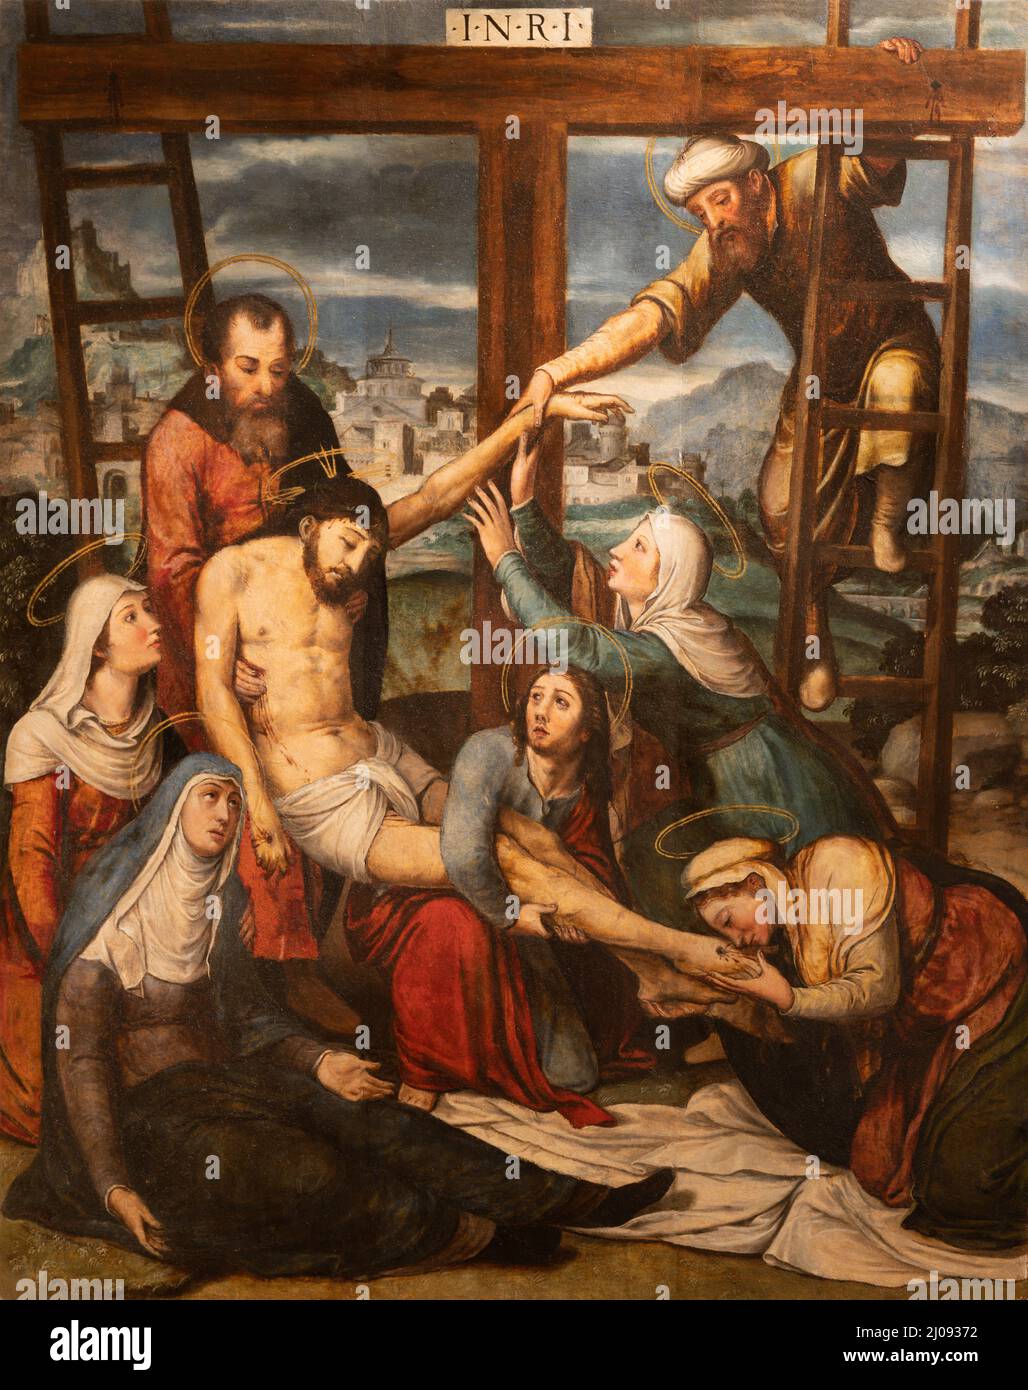 VALENCE, ESPAGNE - 14 FÉVRIER 2022 : la peinture Renaissance de la déposition de la croix dans la cathédrale par Juan de Juanes à partir de 16. Cent. Banque D'Images